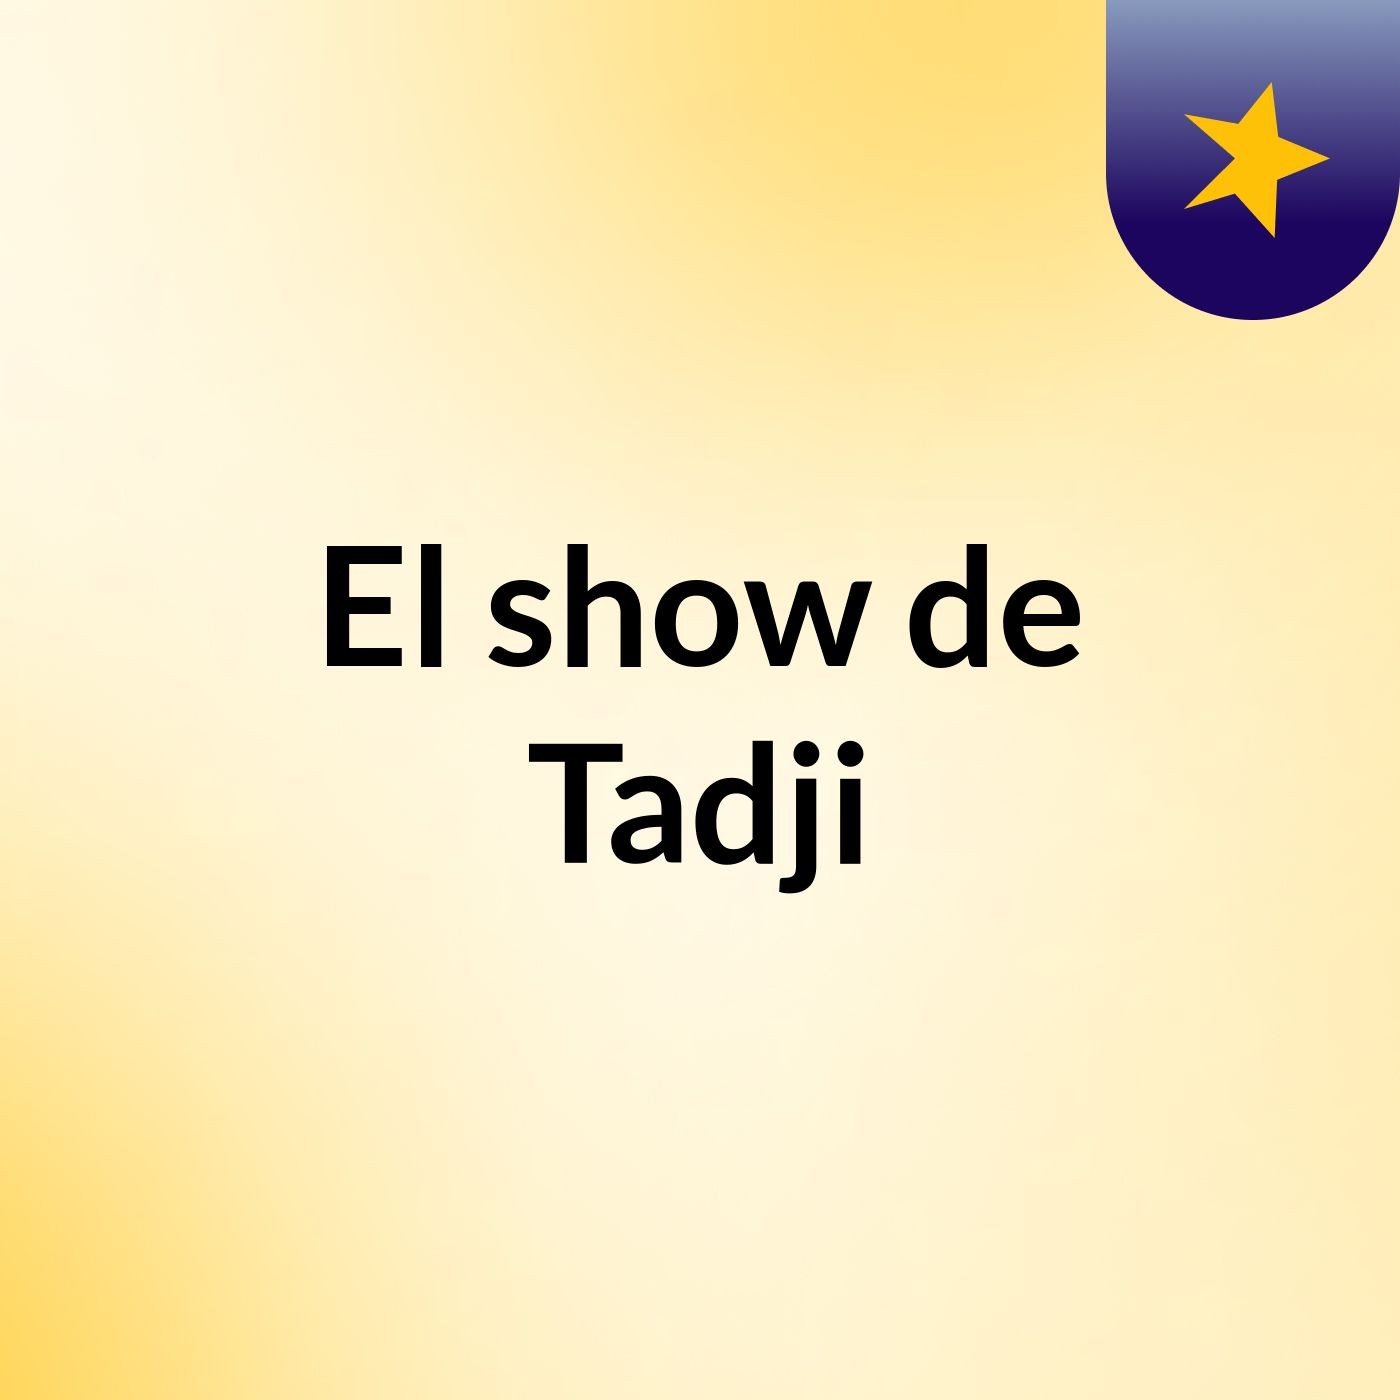 El show de Tadji